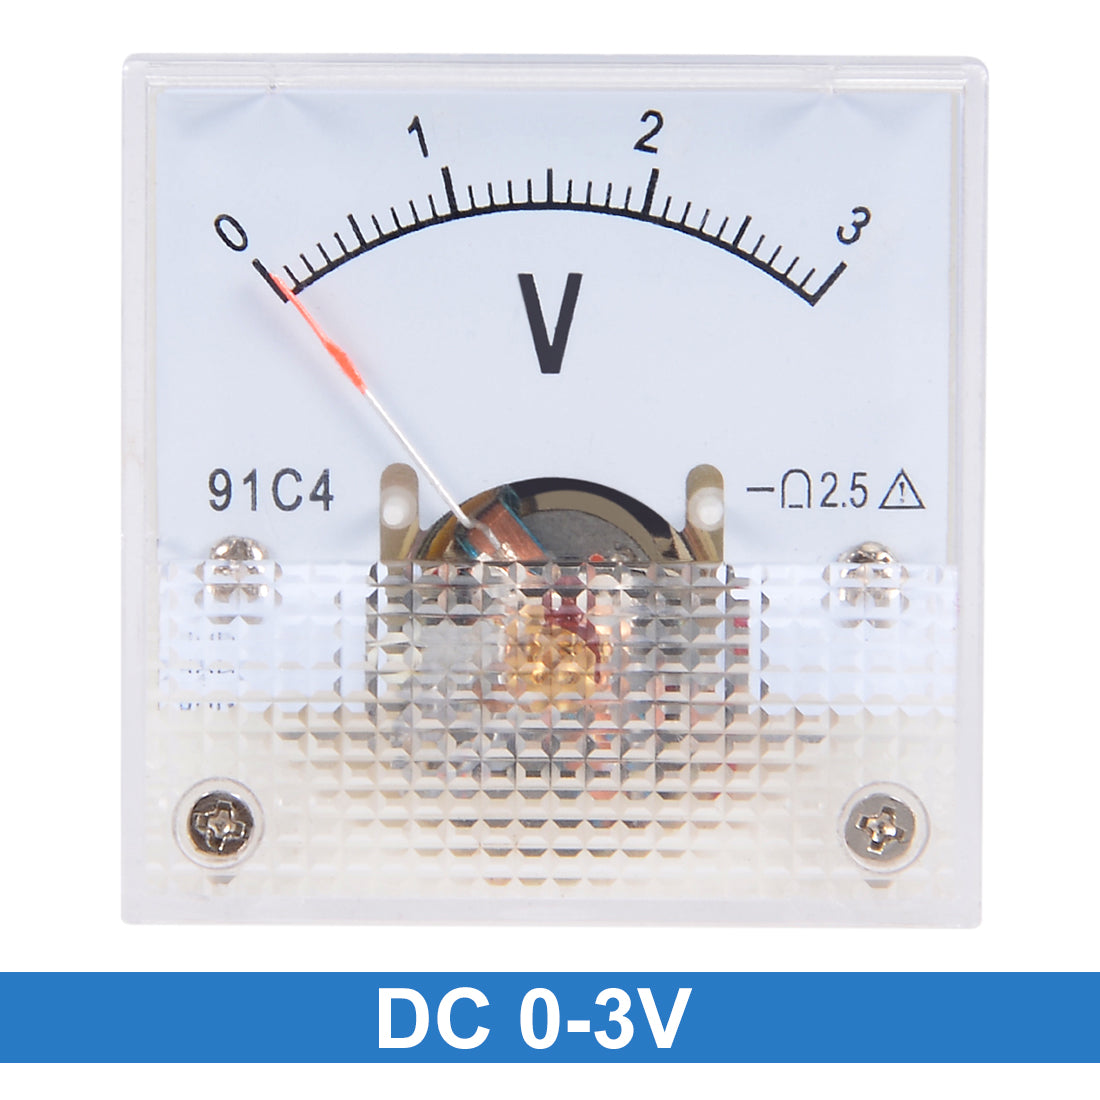 uxcell Uxcell DC 0-3V Analog Faceplate Voltage Gauge Volt Meter 91C4 2.5% Error Margin